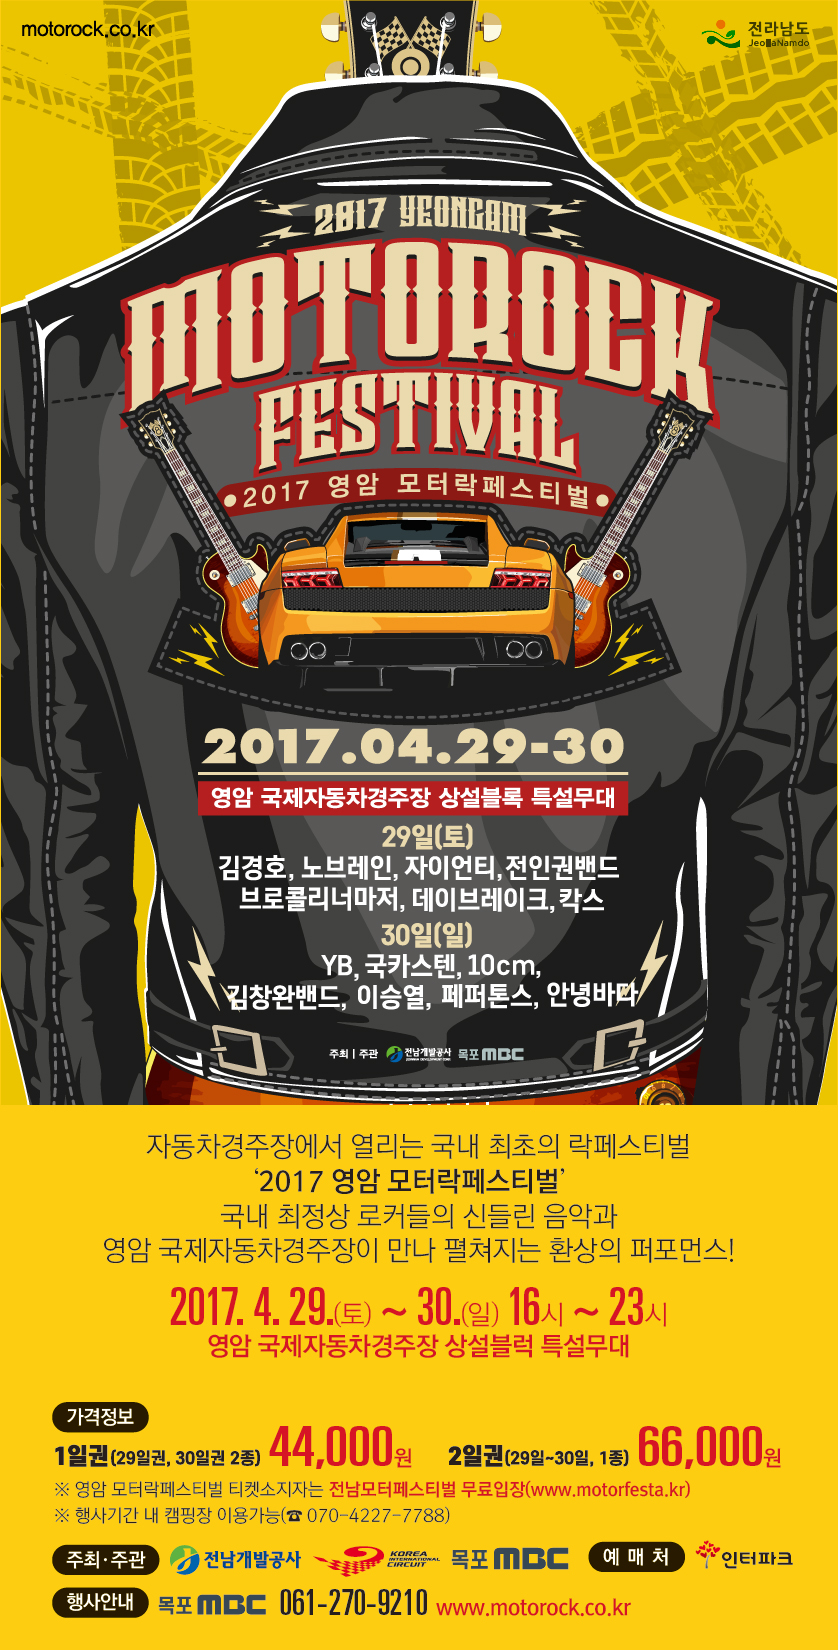 2017영암모터락페스티벌 행사정보